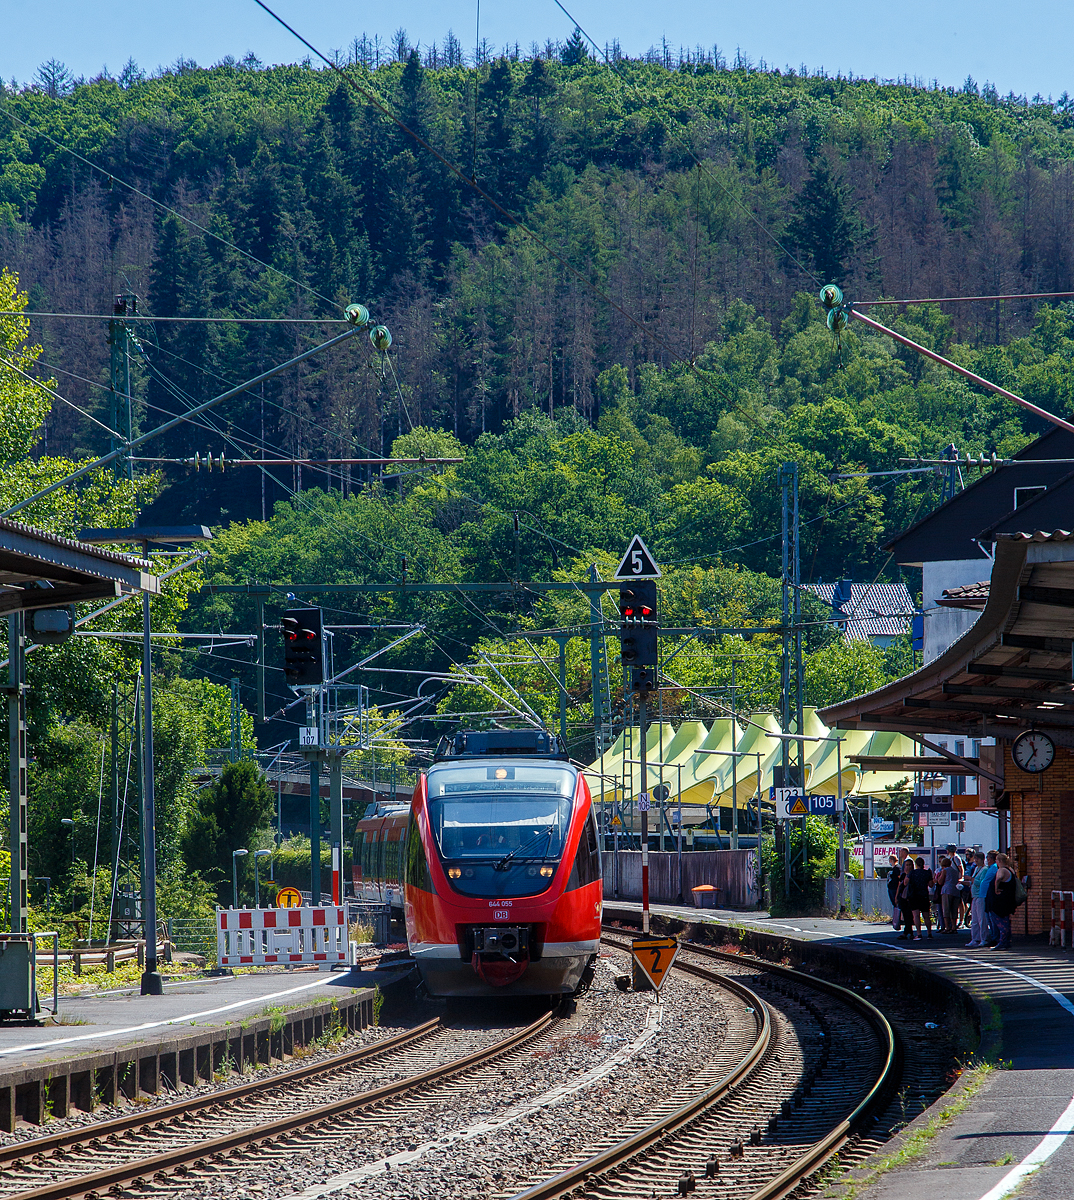 Siegtal pur 2022: Zwei gekuppelte diesel-elektrische Bombardier Talent (644 055 / 644 555 und 644 046 / 644 546) der DB Regio NRW (VAREO), erreichen am 03.07.2022 als Sonderzug RE 9 (Siegen – Siegburg/Bonn) den Bahnhof Betzdorf (Sieg).

Am 3. Juli hieß es zum 25. Mal „Siegtal pur 2022“ und somit „Bahn frei“ für Radfahrer und Inline-Skater, Jogger, Wanderer u. a. Die etwa 100 Kilometer lange Strecke in Siegtal, entlang der Sieg zwischen Siegburg und Siegen, blieb an dem Sonntag Autofrei.

Wie in jedem Jahr unterstützte die Deutsche Bahn den Event mit Sonderzügen. Die planmäßigen Zugverbindungen von Regionalexpress, Regionalbahn und S-Bahn im Siegtal wurden am Sonntag durch den Einsatz von Sonderzügen aufgestockt. Zwölf zusätzliche Pendelfahrten zwischen Köln bzw. Siegburg und Siegen standen für die schnelle Beförderung der Radler zur Verfügung.
